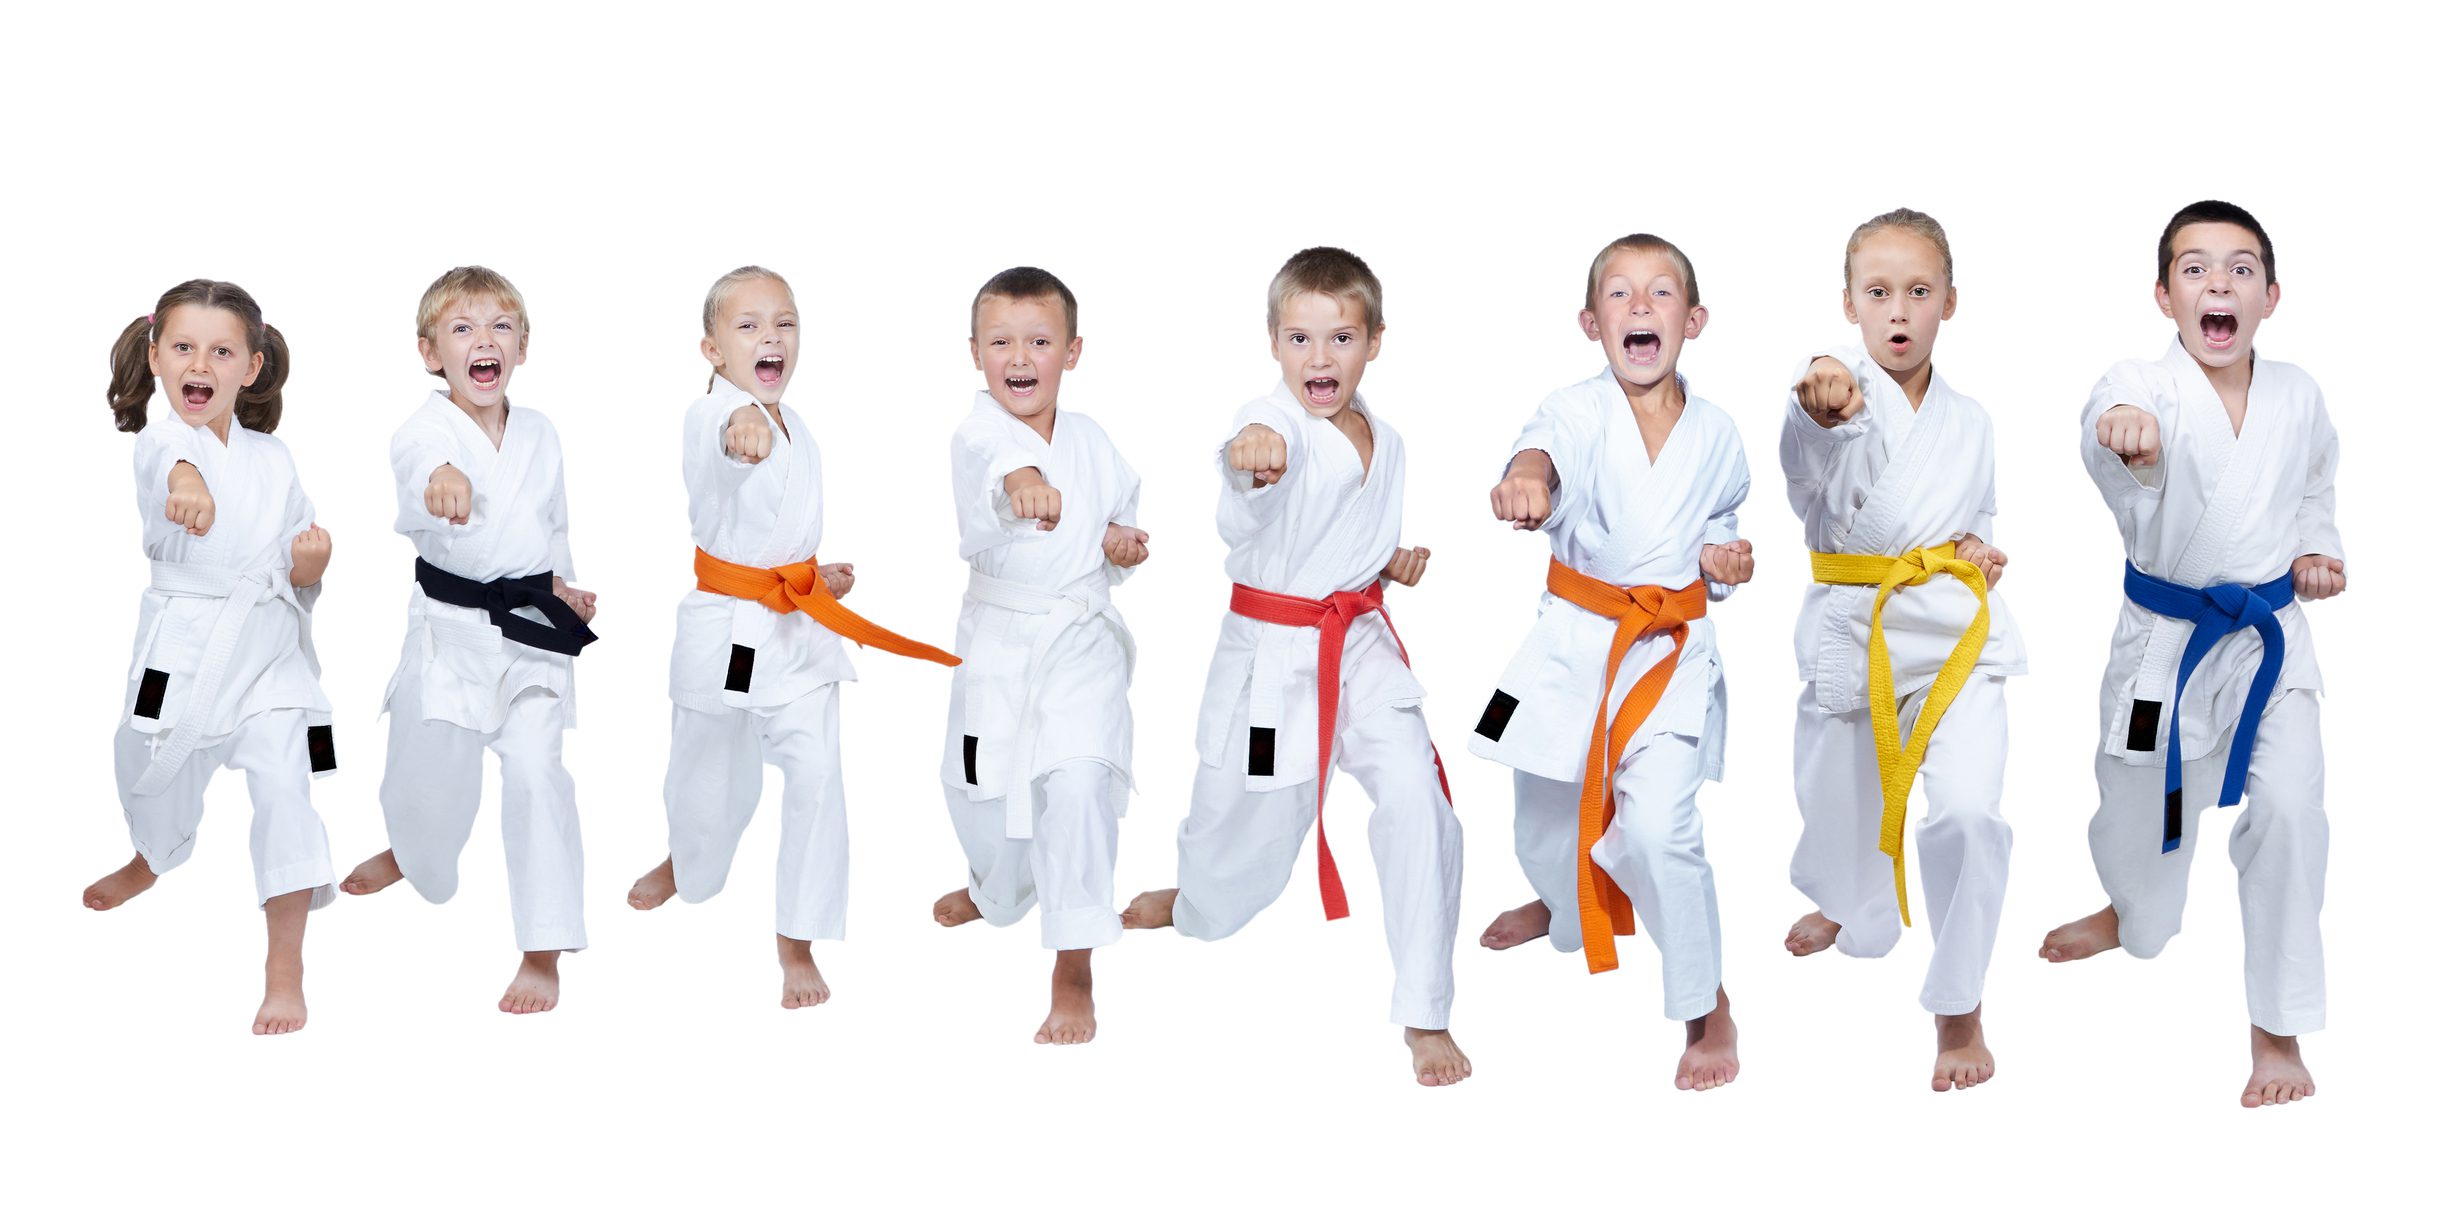 Kids in karate uniforms punching